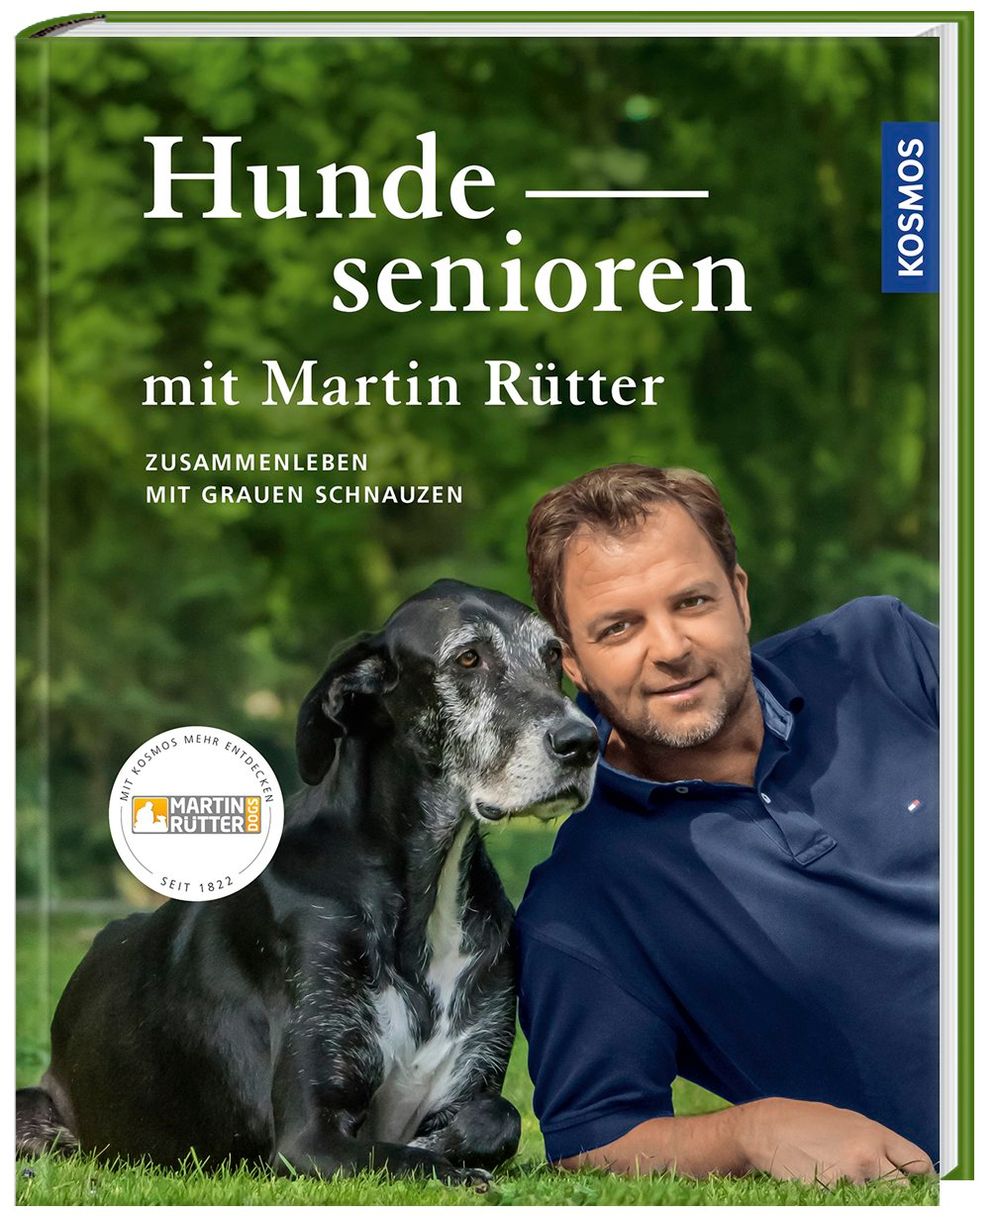 Hundesenioren mit Martin Rütter Buch versandkostenfrei bei Weltbild.at